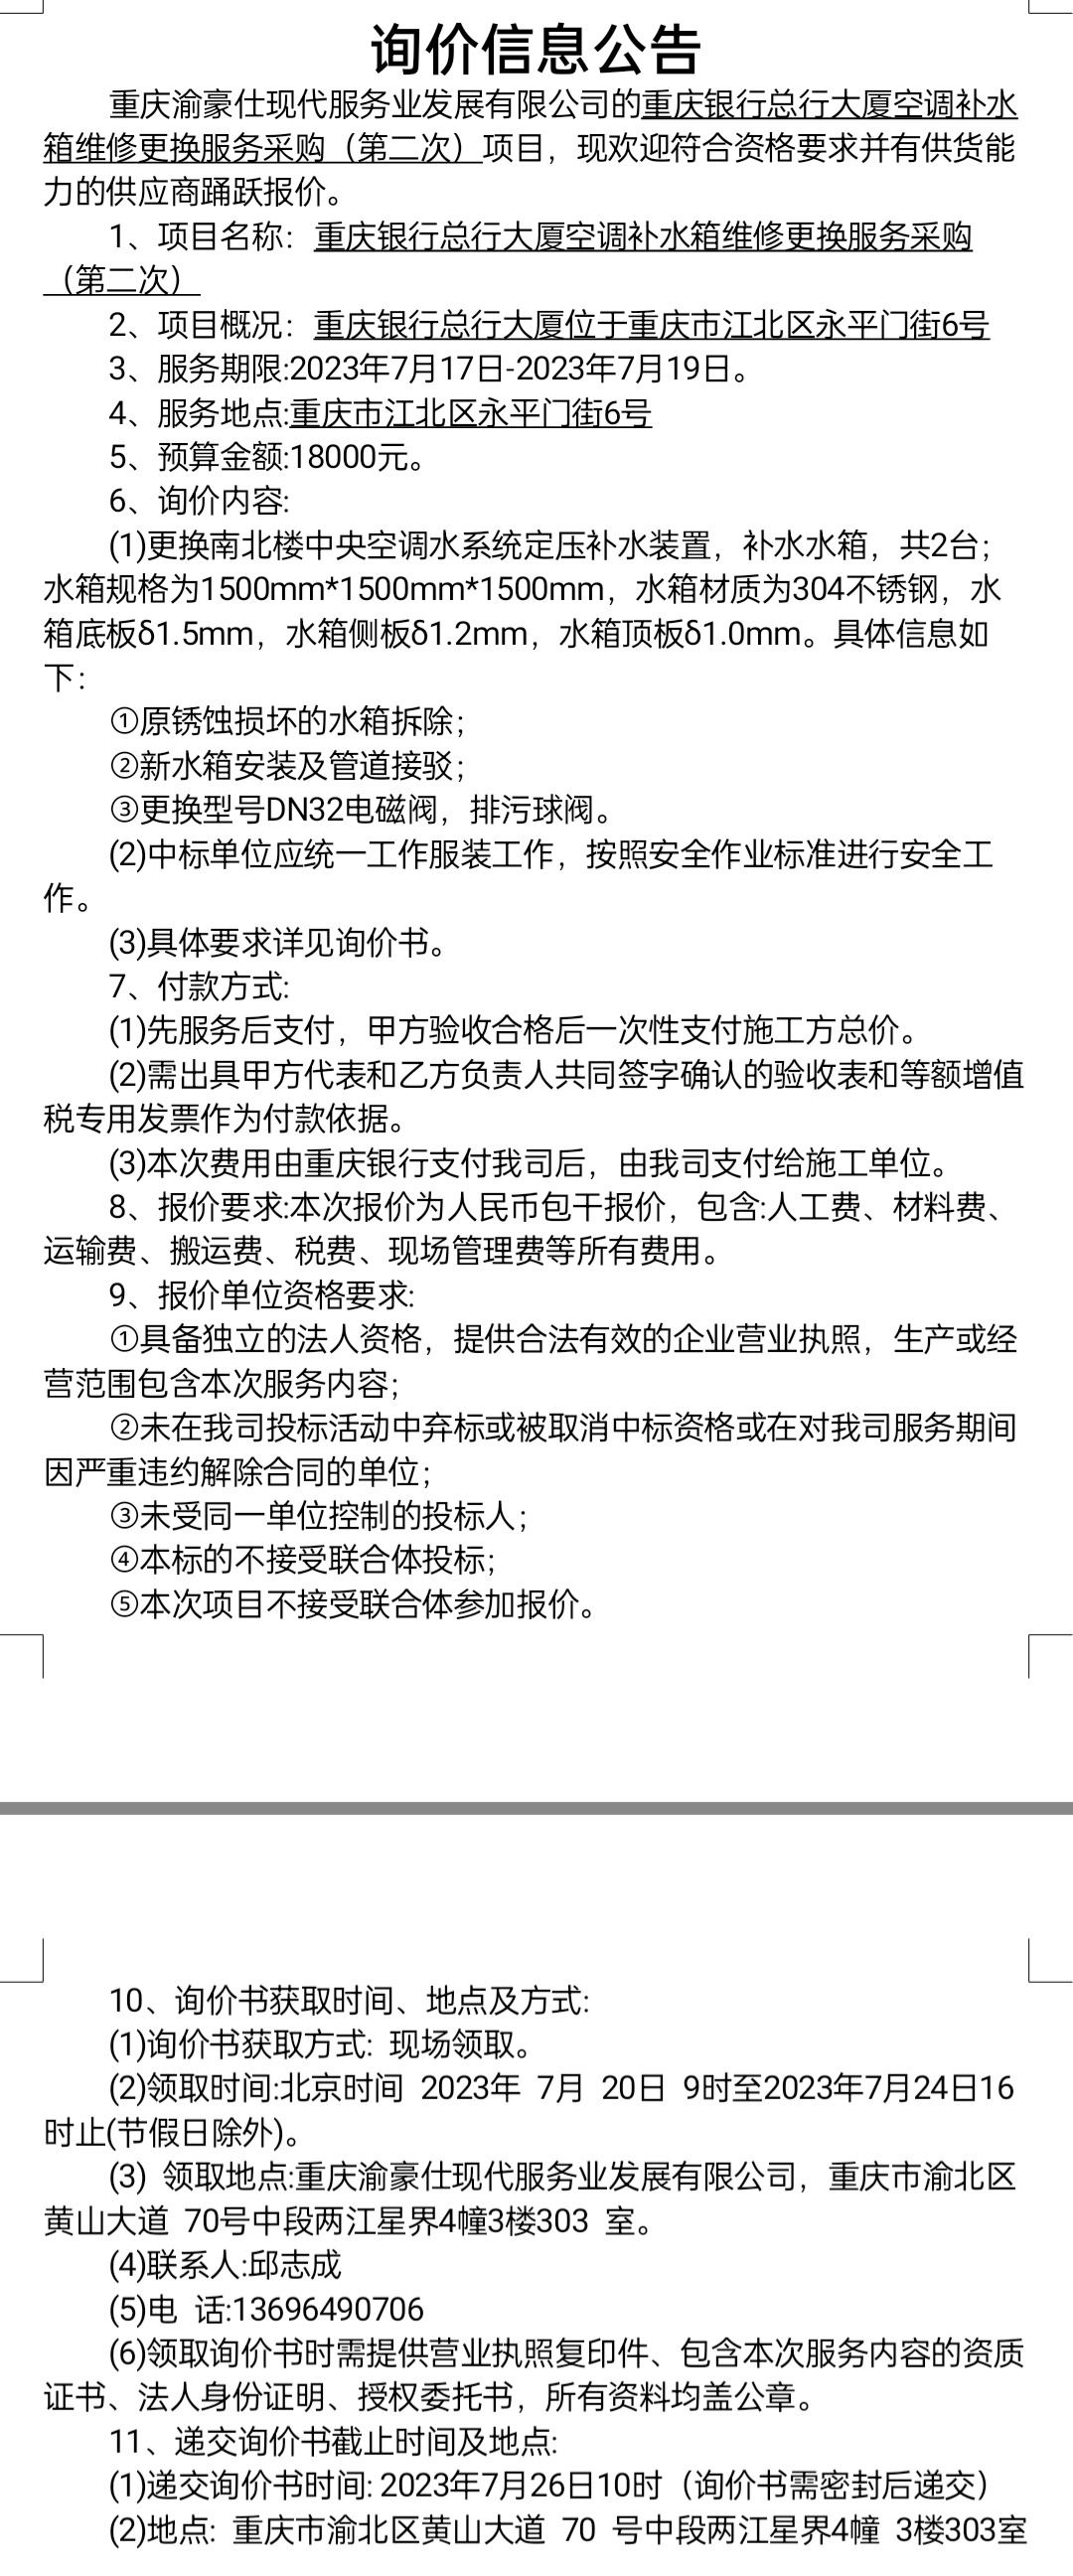 重庆银行总行大厦空调补水箱维修更换服务采购（第二次）项目询价公告